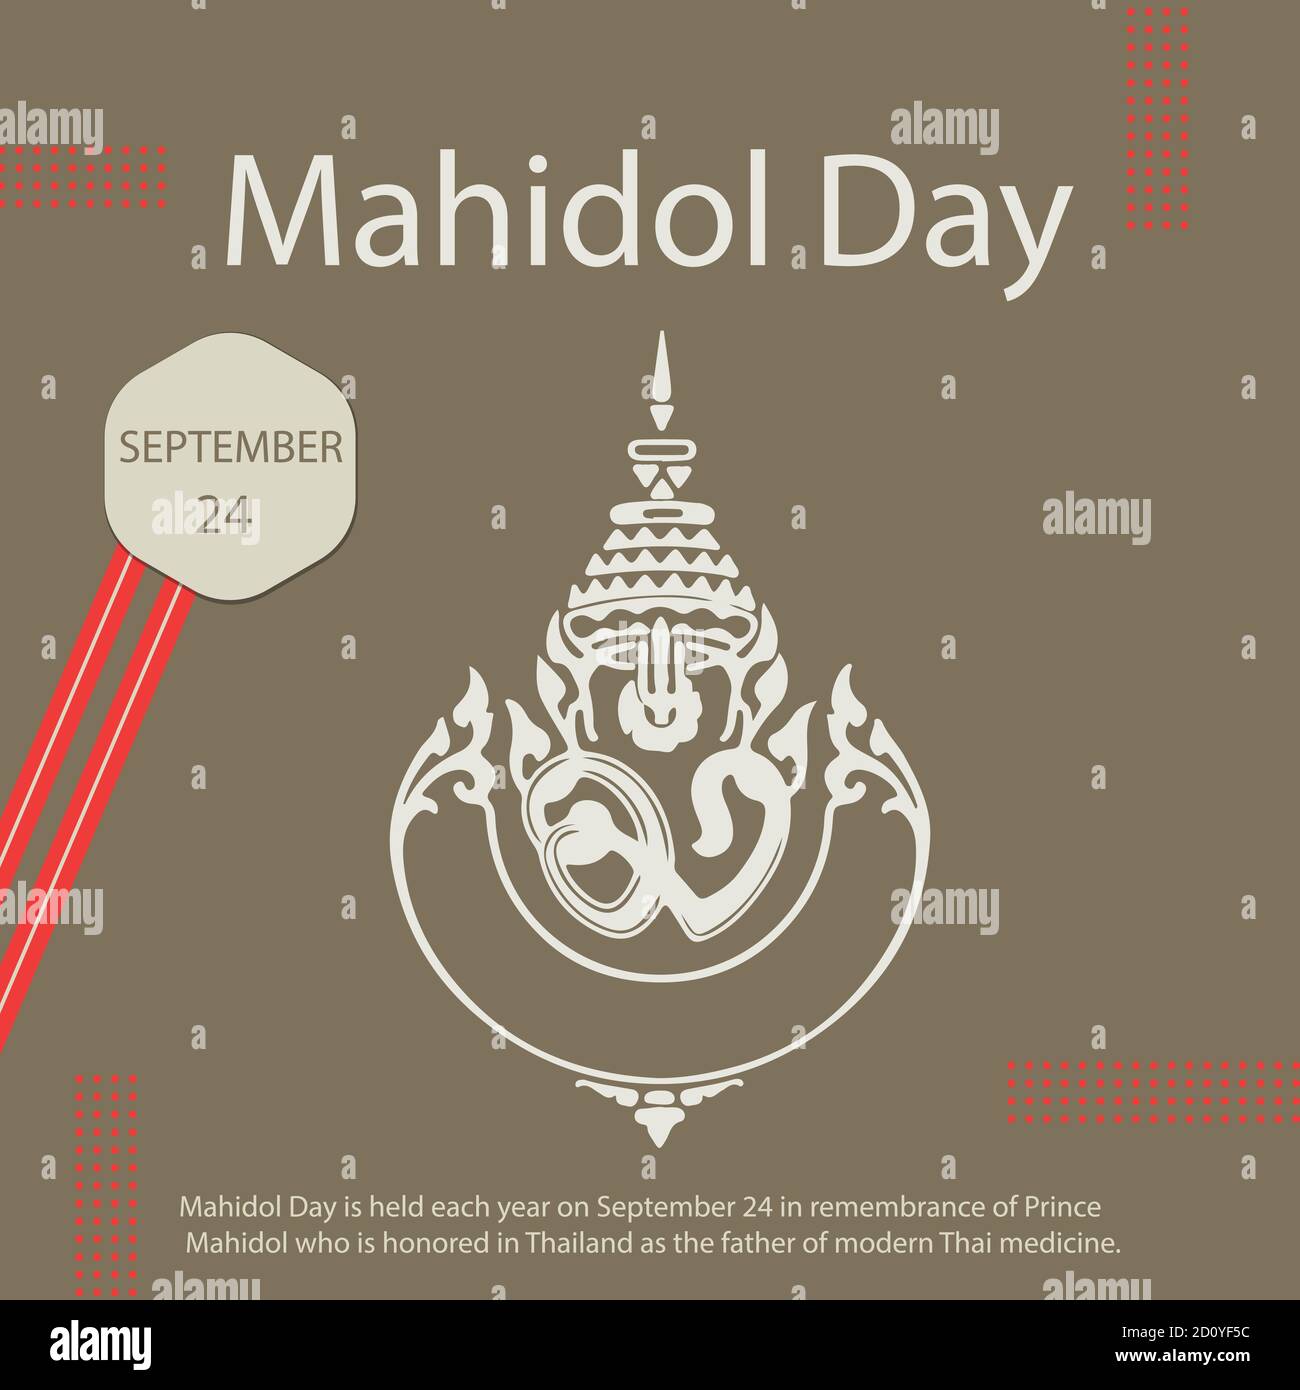 Mahidol Day si svolge ogni anno il 24 settembre in ricordo del principe Mahidol che è onorato in Thailandia come il padre della medicina tailandese moderna. Illustrazione Vettoriale